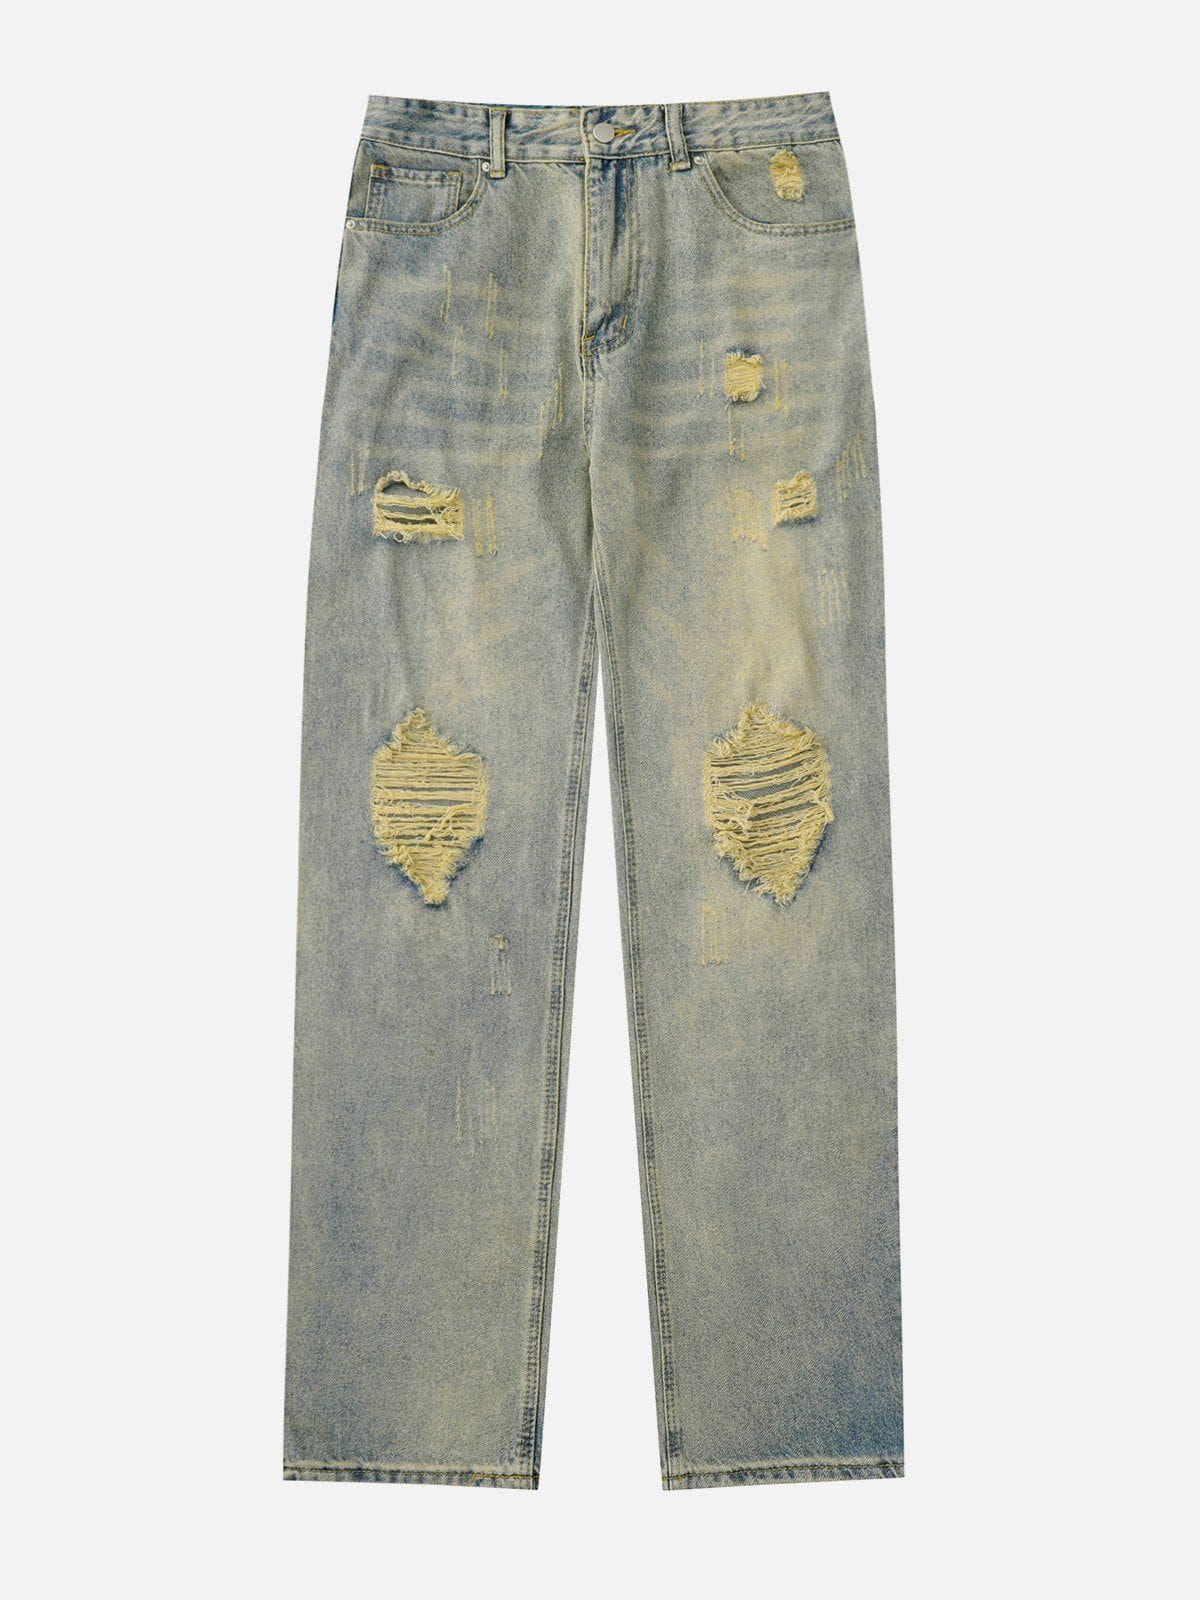 Eprezzy® - Distressed Washed Jeans Streetwear Fashion - eprezzy.com